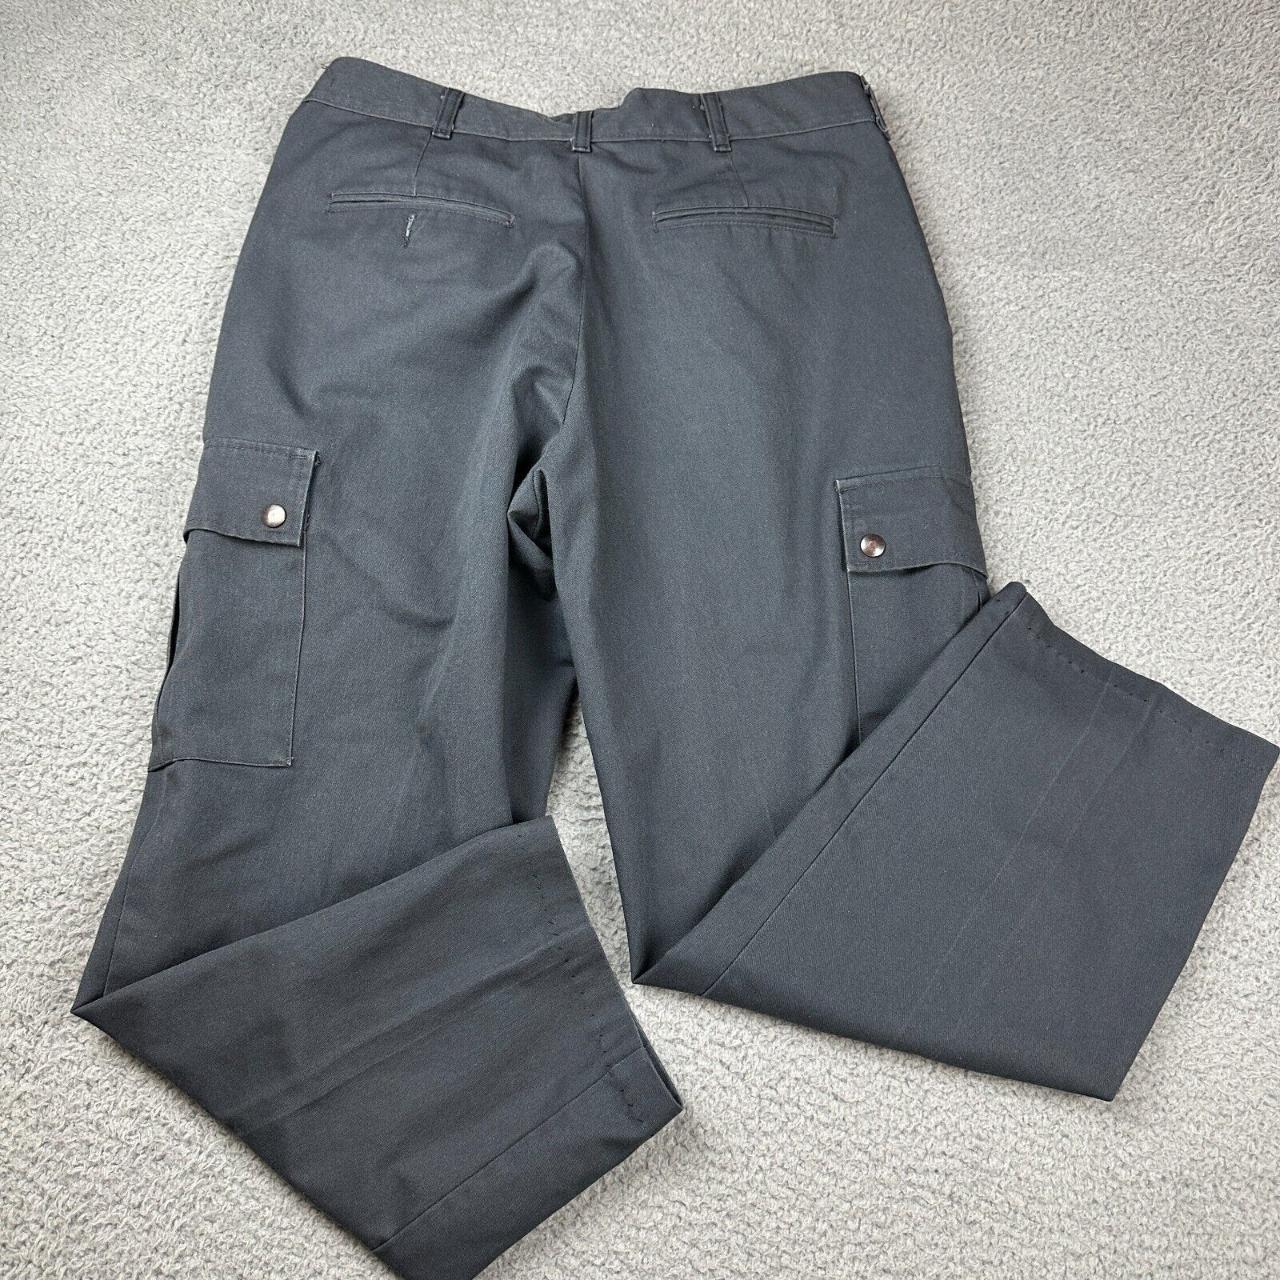 #Wearguard Mens Gray #Cargo #Uniform #Pants Size... - Depop